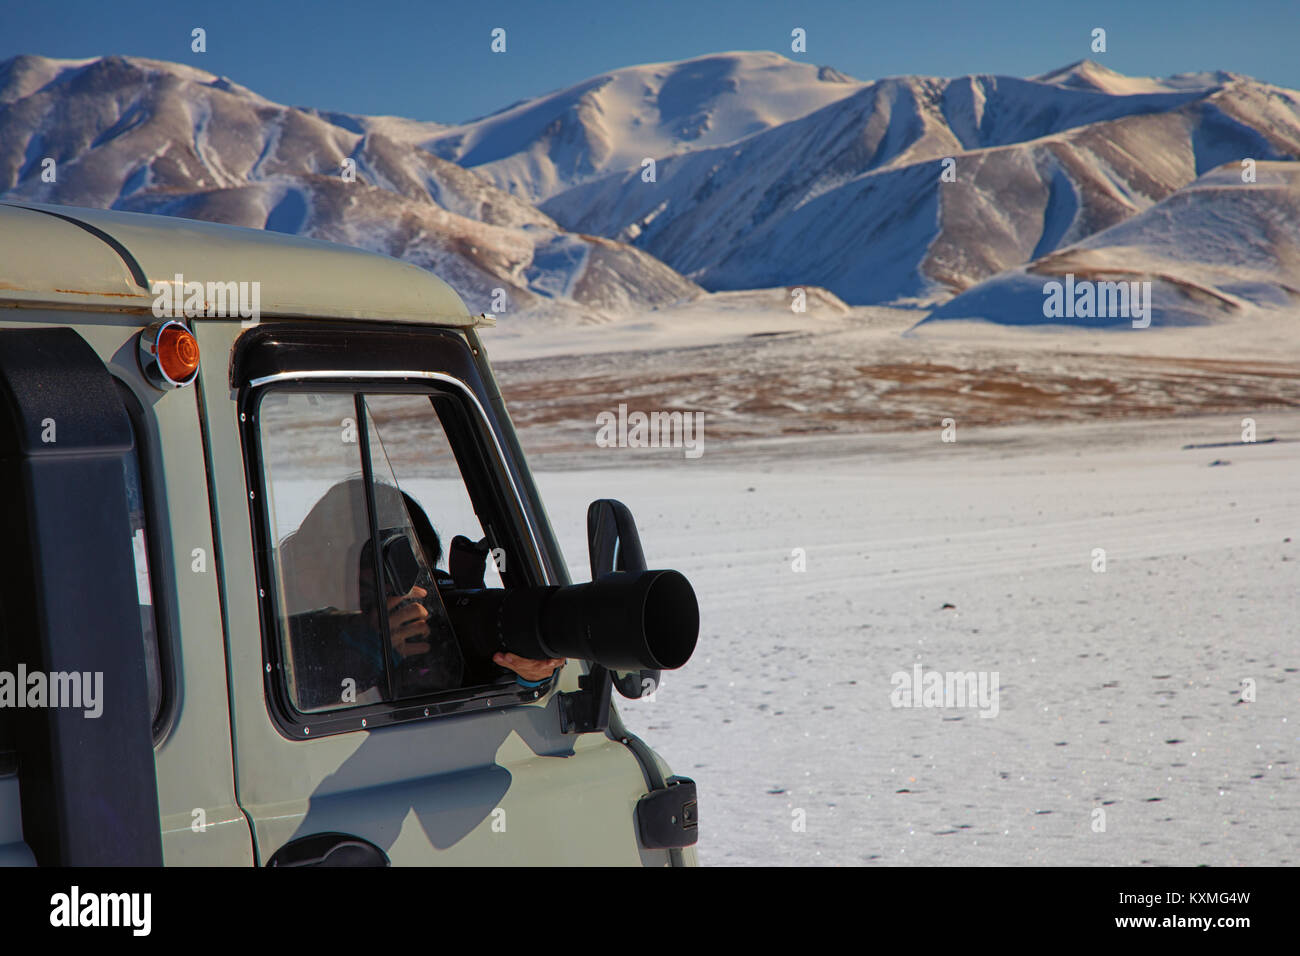 Ragazza fotografare il russo van UAZ 452 camper dslr lengs zoom sigma 150-600mm neve inverno Mongolia montagne innevate ora d'oro Foto Stock